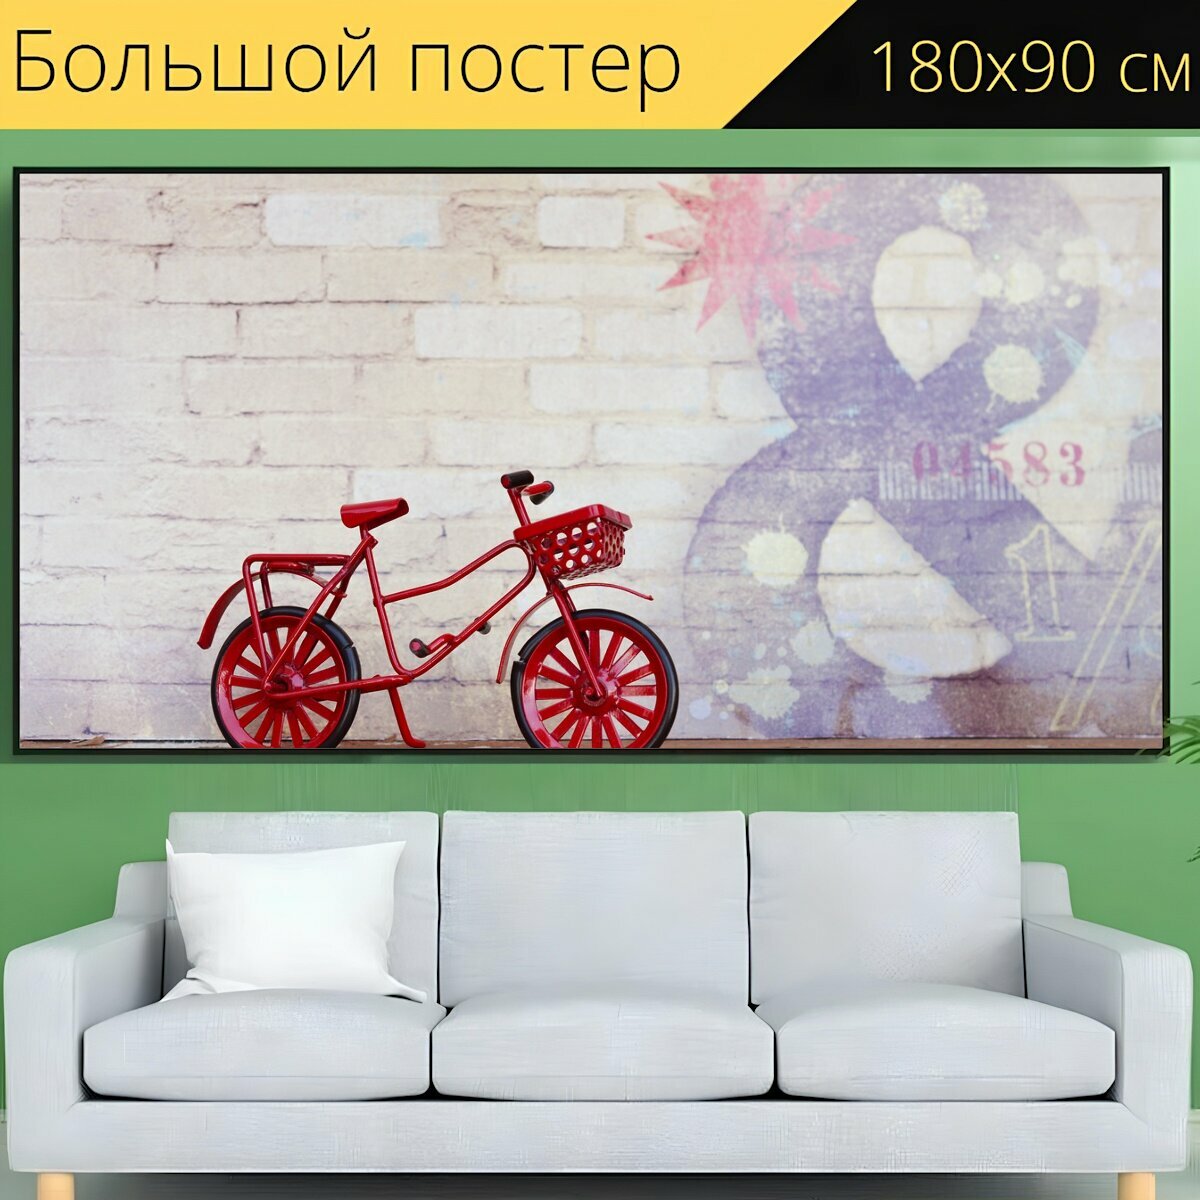 Большой постер "Велосипед, красный, цикл" 180 x 90 см. для интерьера